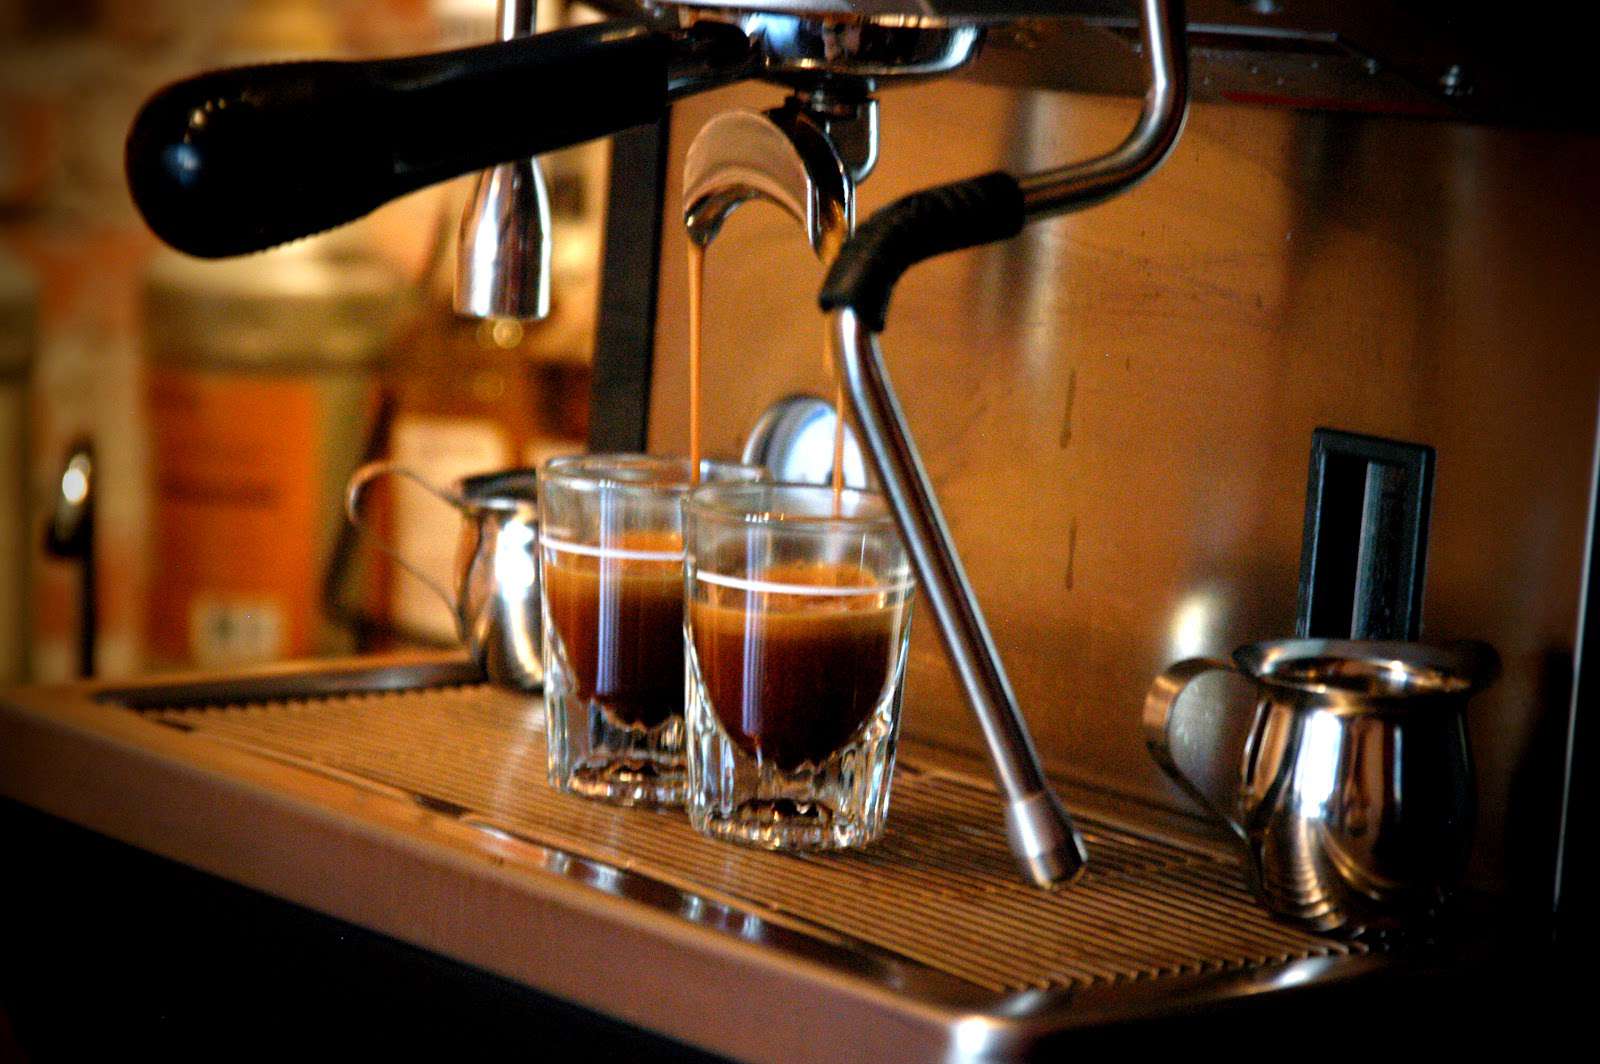 chòn đen đẵng cấp-cà phê chồn vip vn đậm đà hương vị truyền thống-sản phẩm tuyệt hảo cho người dùng--1 gói 500gr thơm ngon có 1 không 2 6